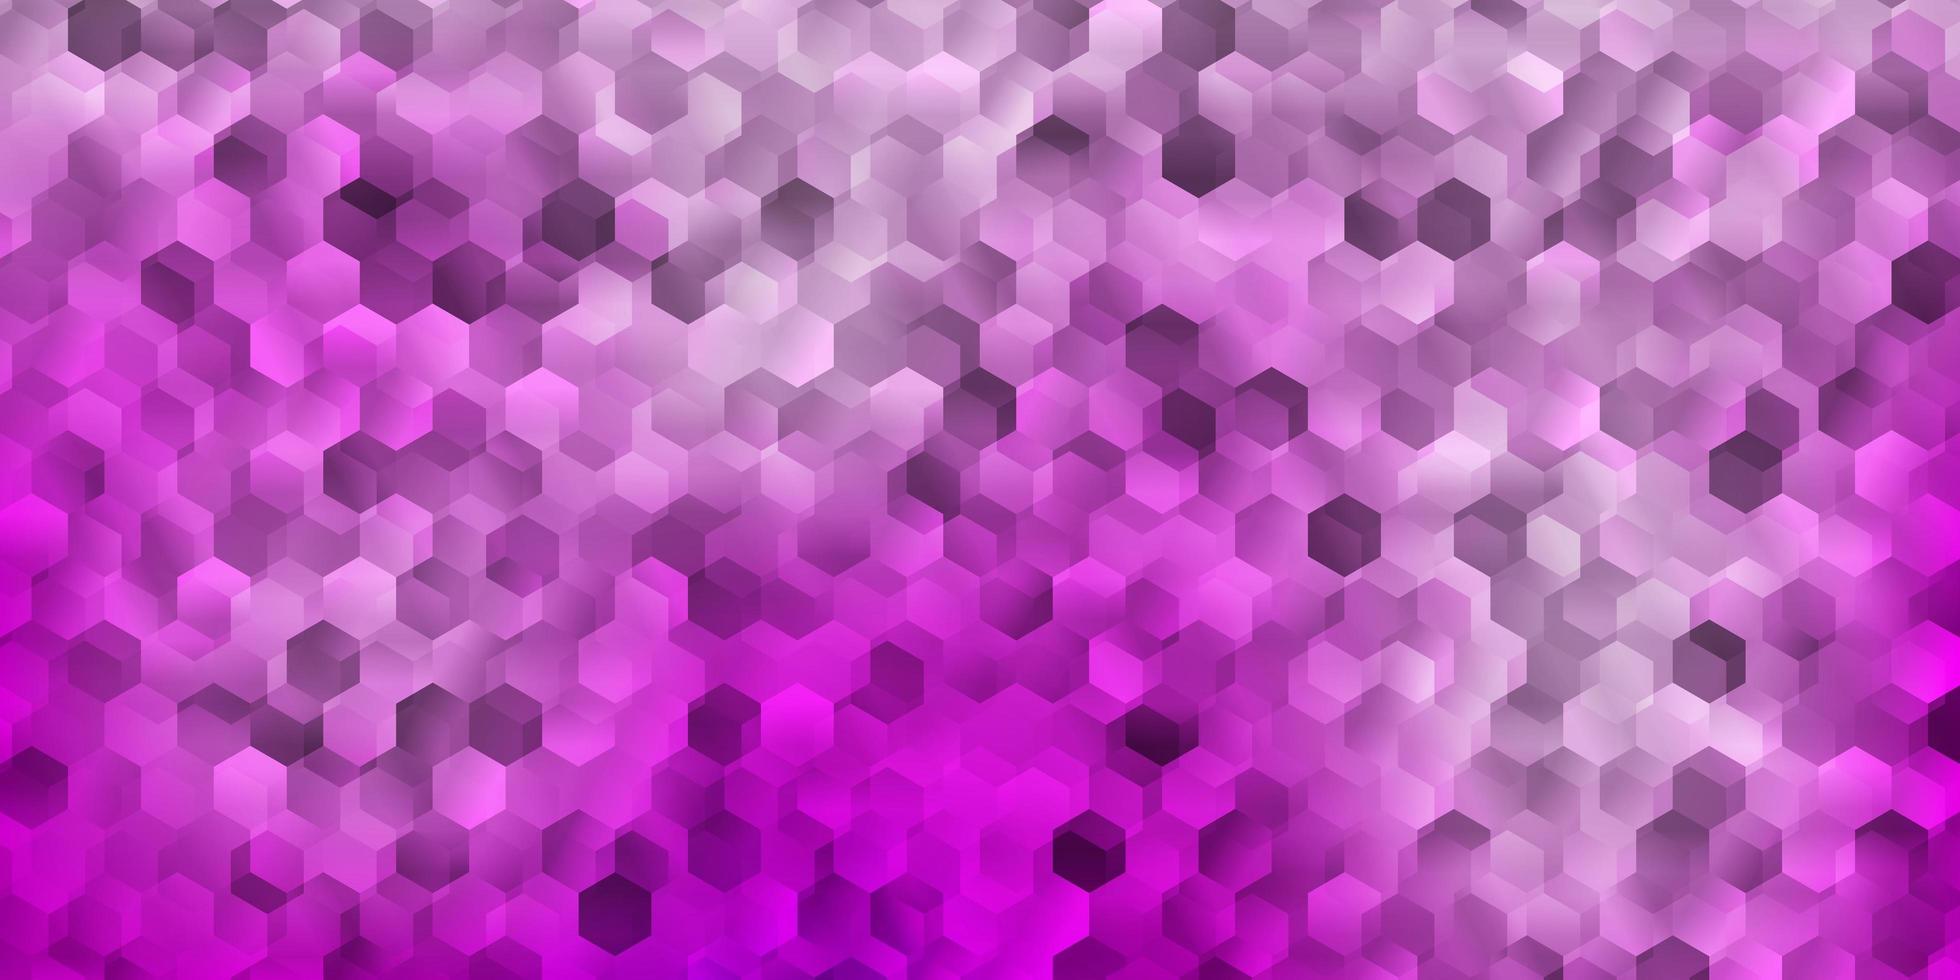 couverture de vecteur rose clair avec des hexagones simples.